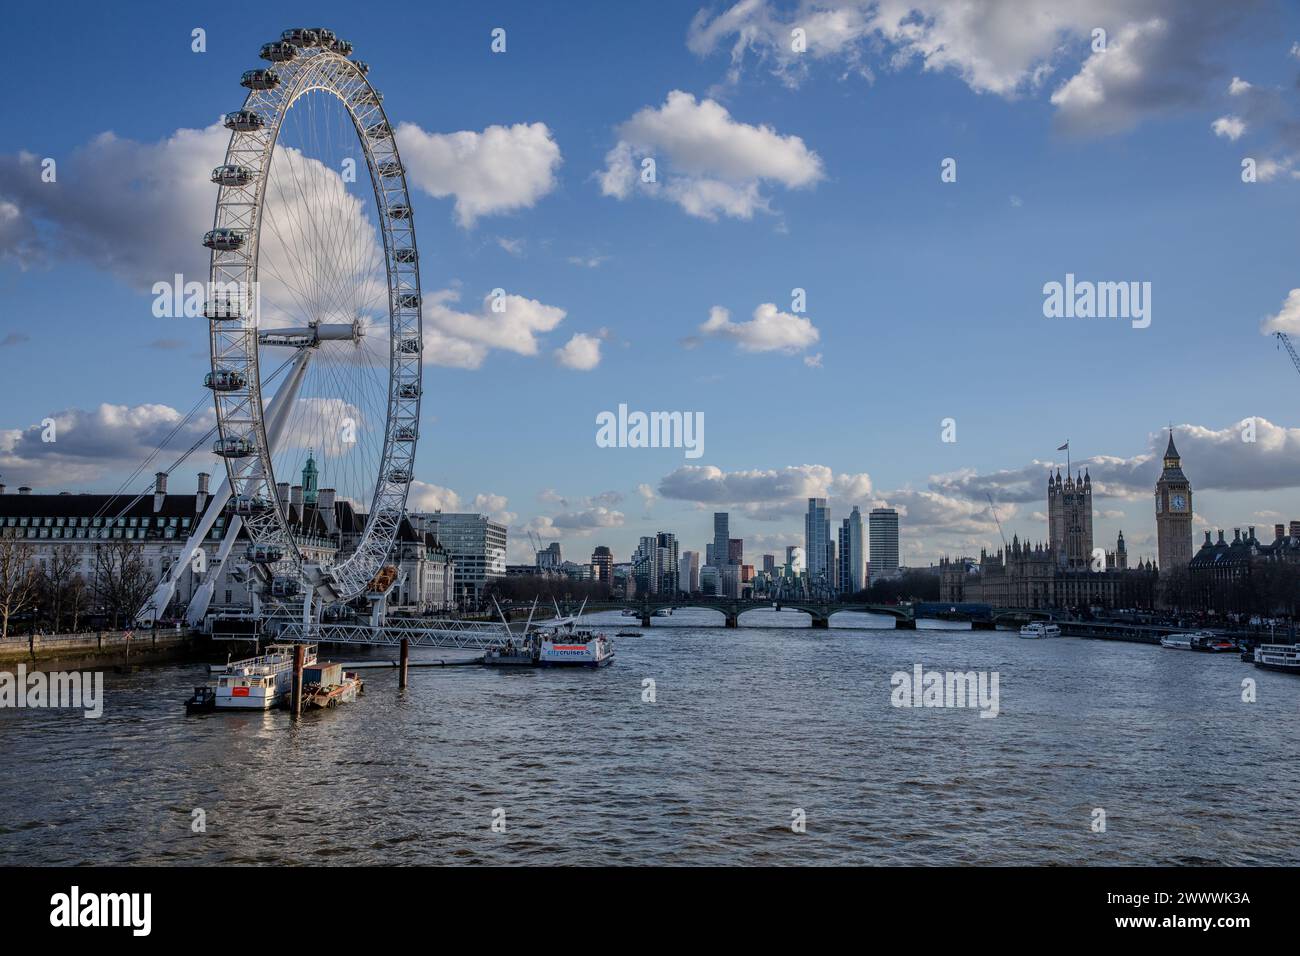 La roue du millénaire sur la rive sud de la Tamise, Londres, Angleterre, Royaume-Uni Banque D'Images